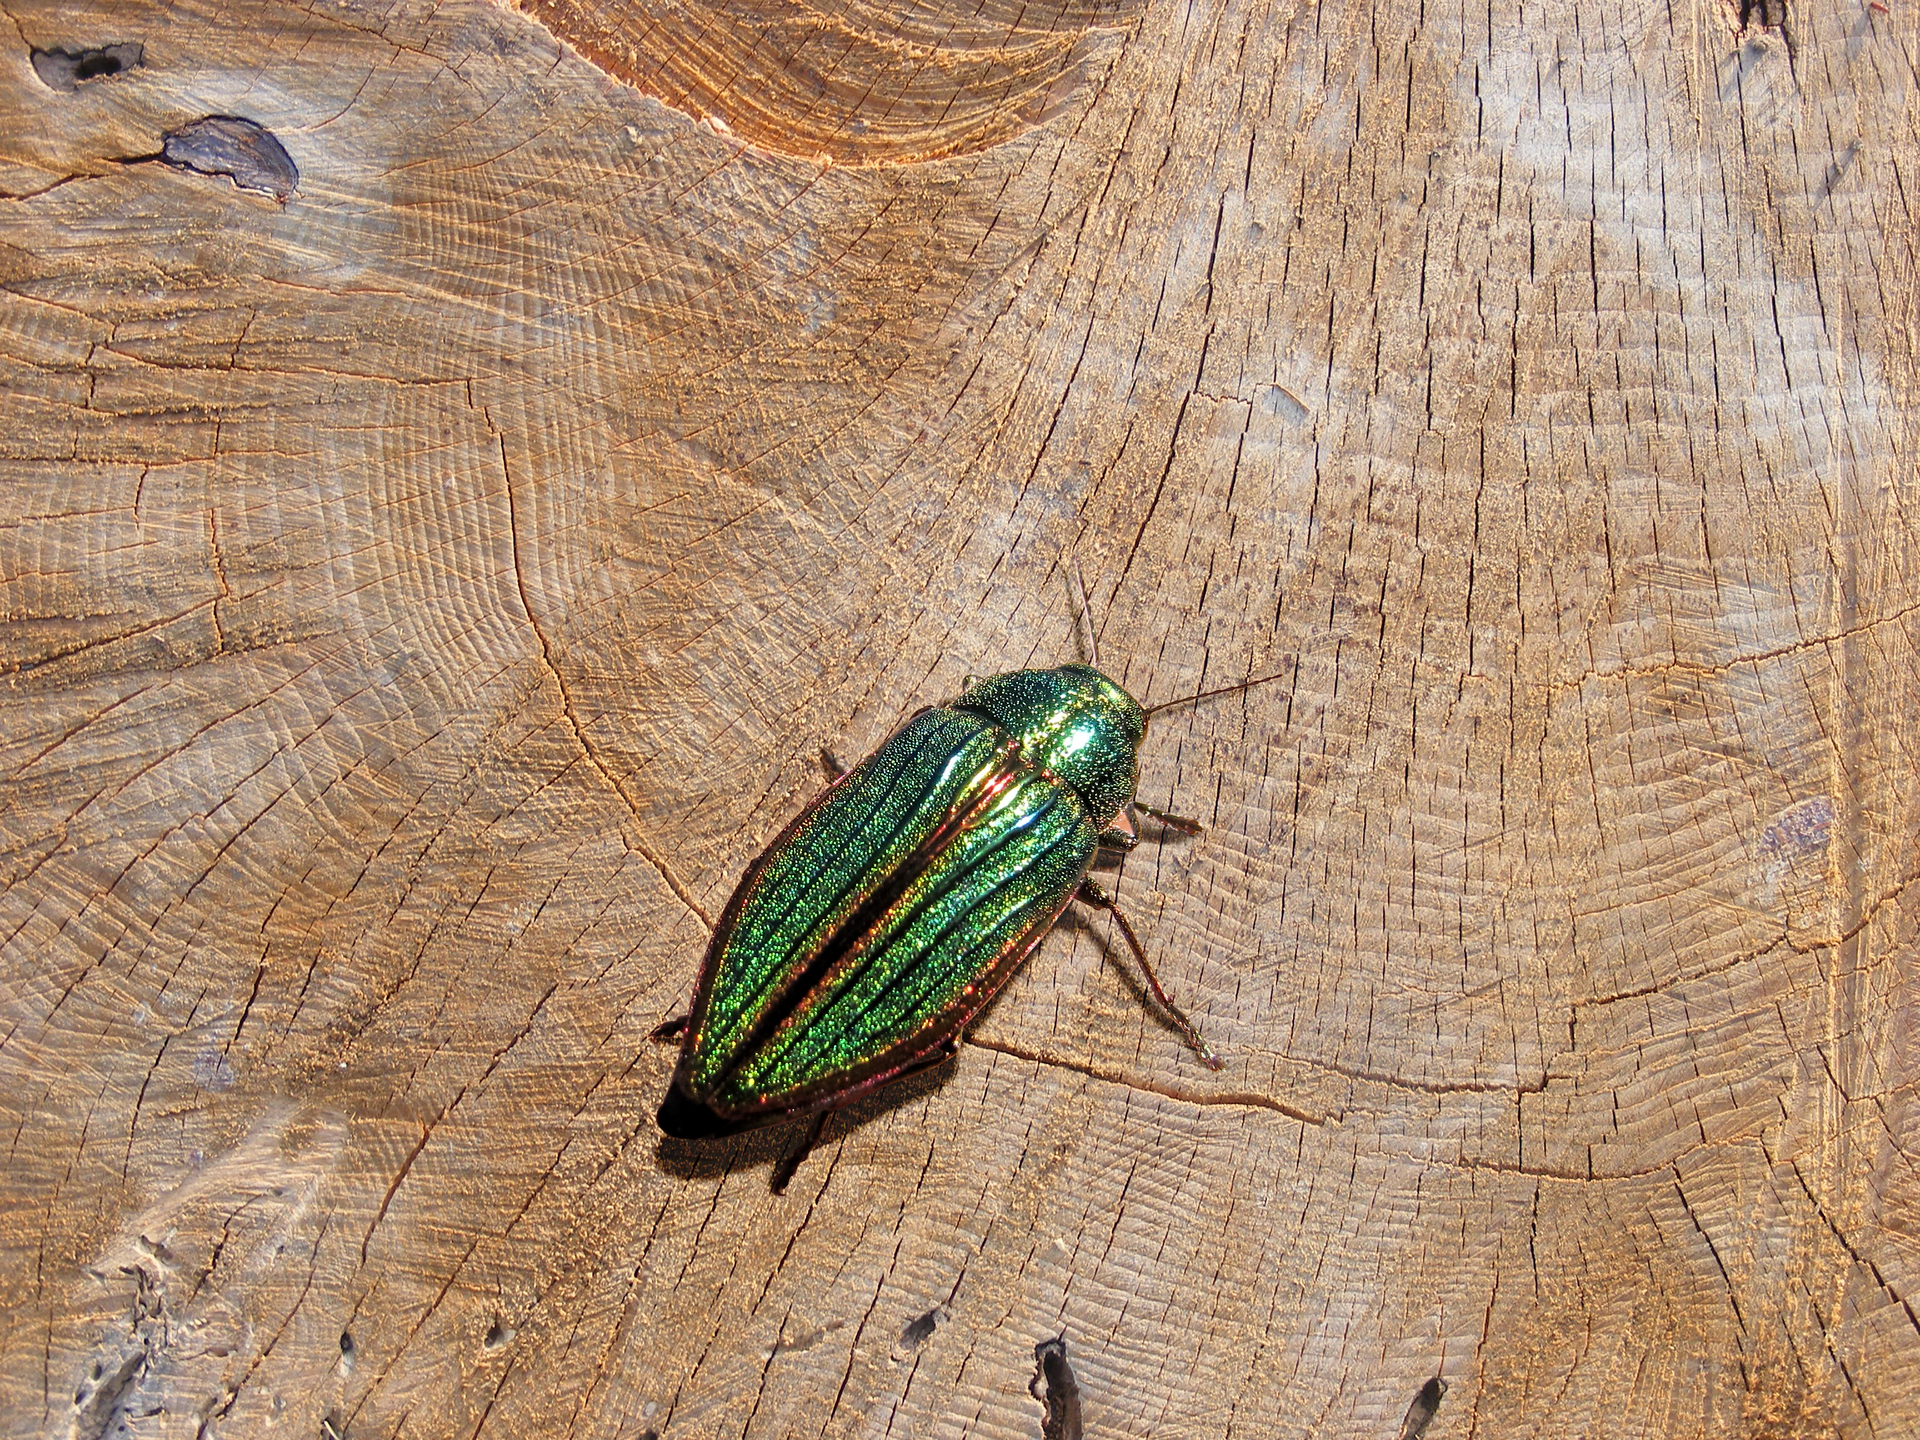 Fotografia przedstawia zbliżenie zielono mieniącego się owada na ściętym pniu. To niewielki chrząszcz bogatek wspaniały.